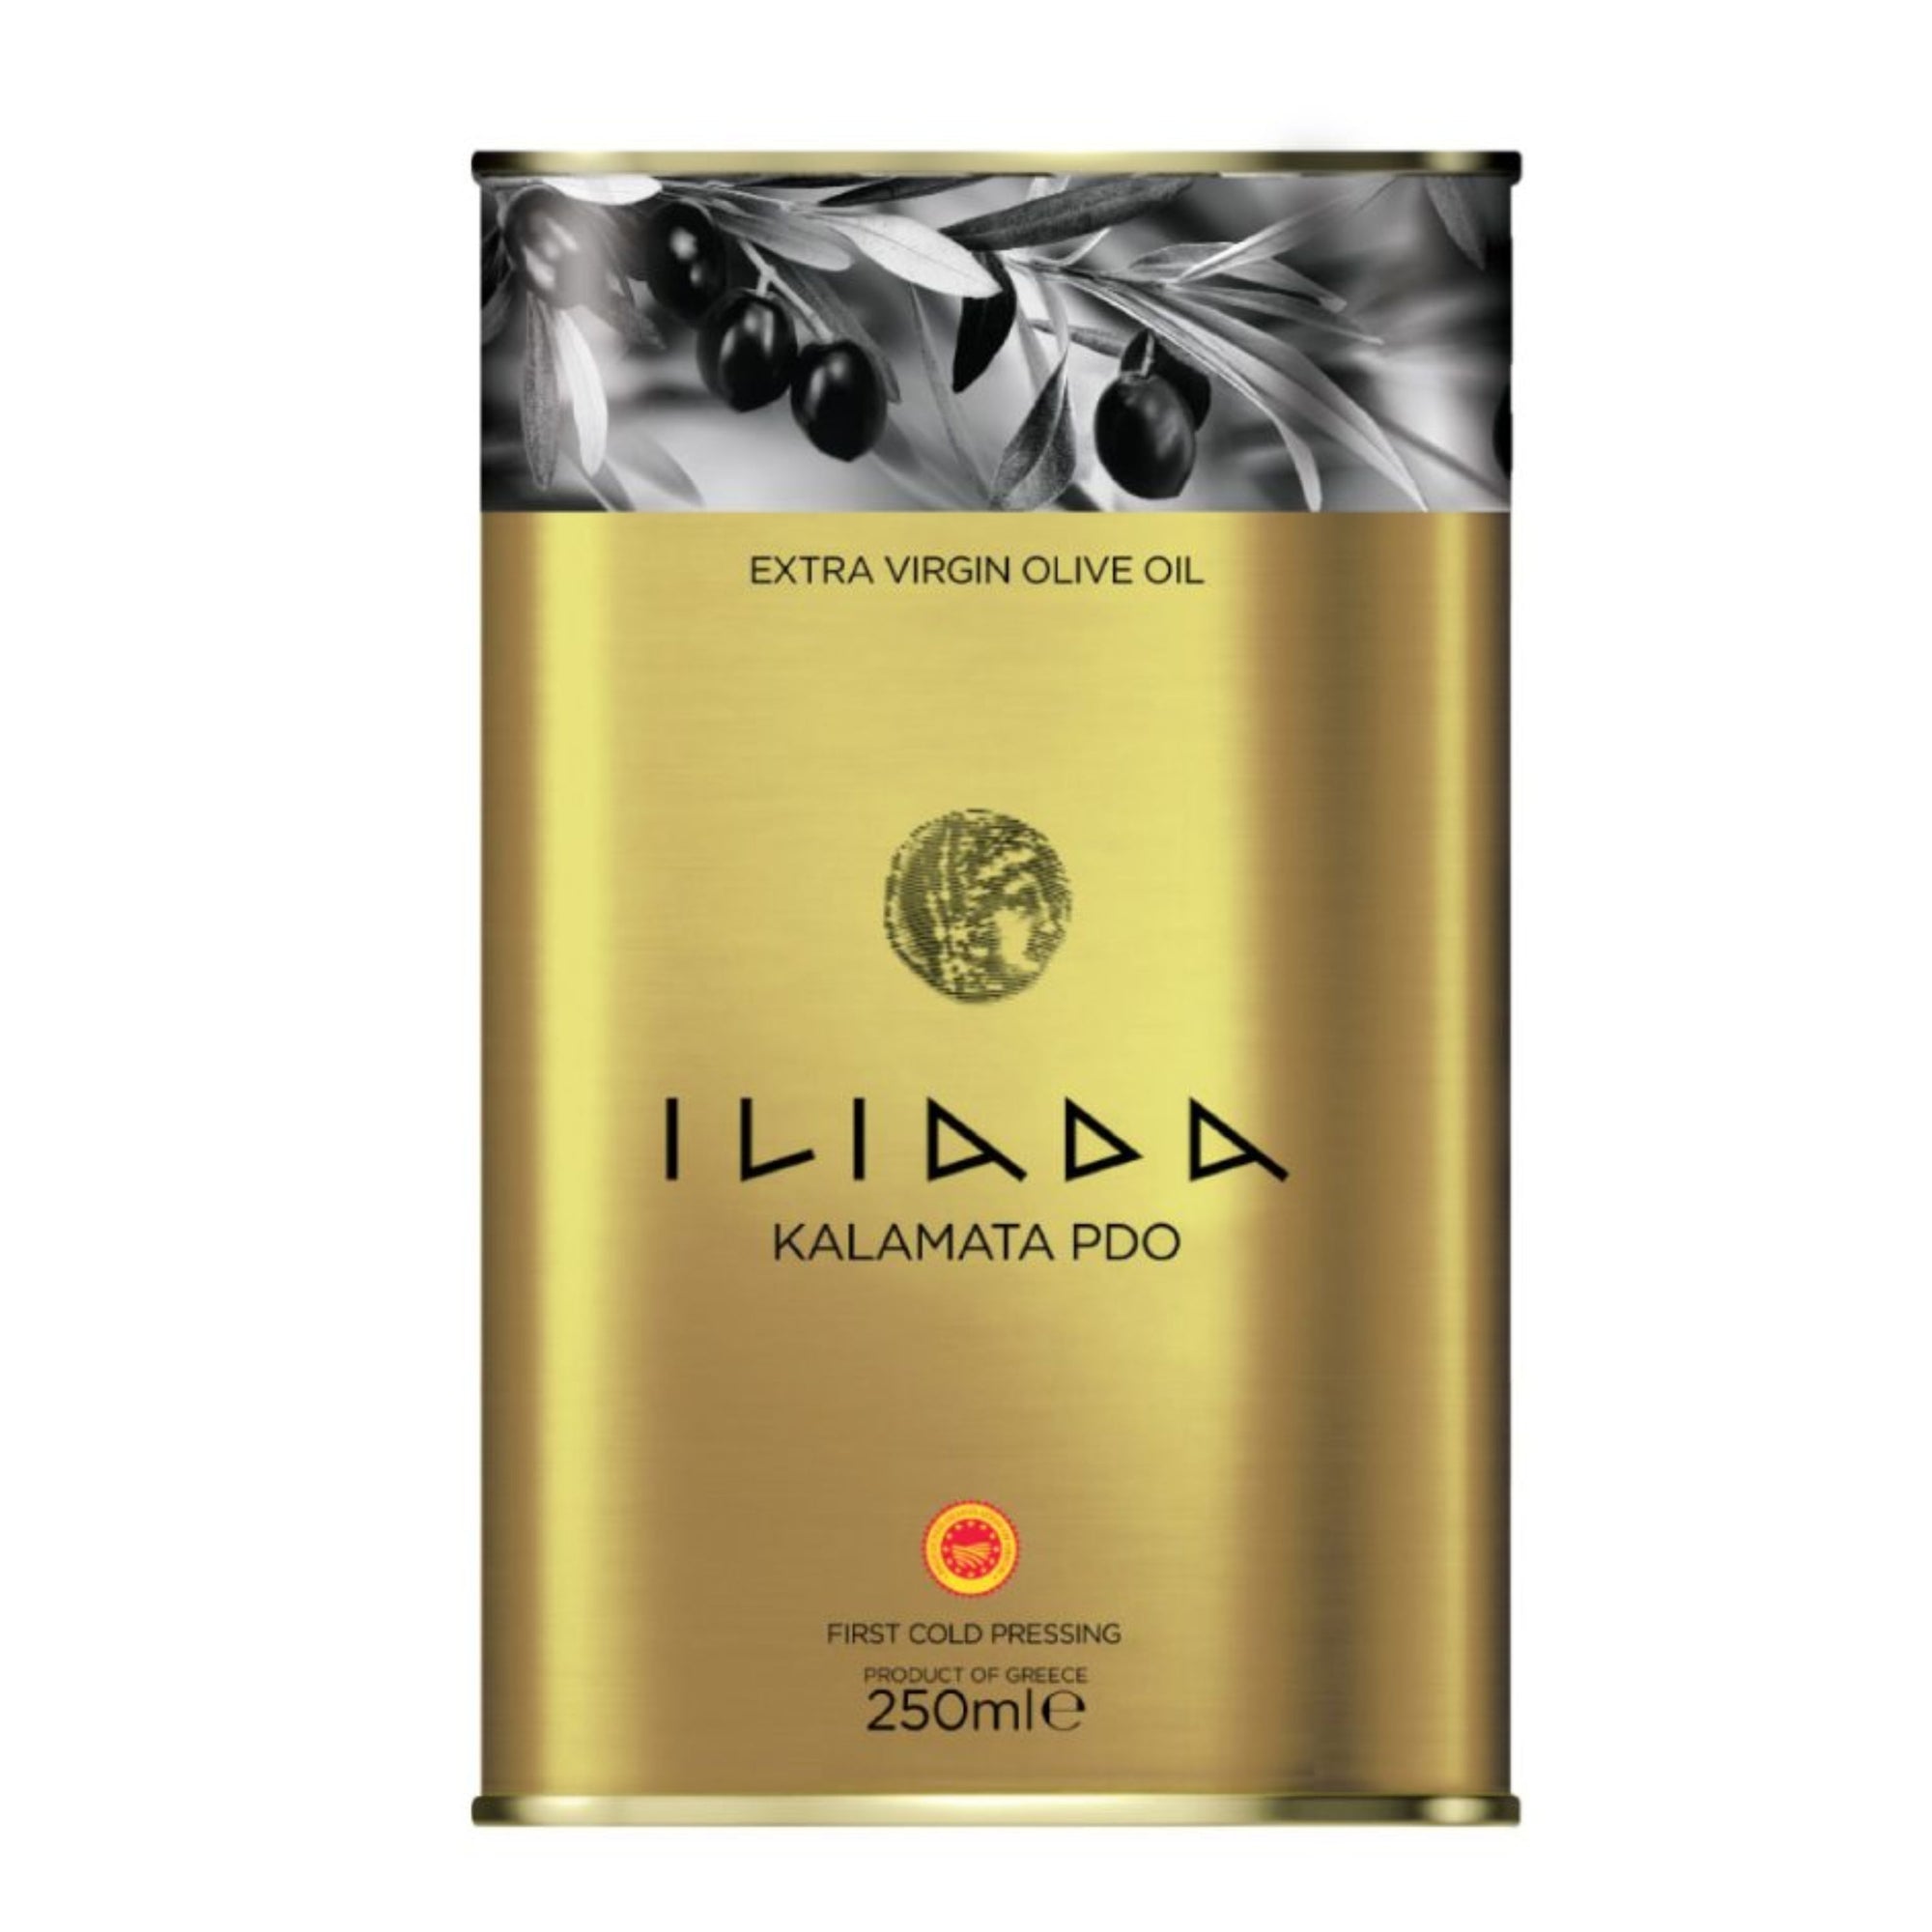 Extra Virgin Olive Oil Kalamata PDO 'Iliada' 250ml tin